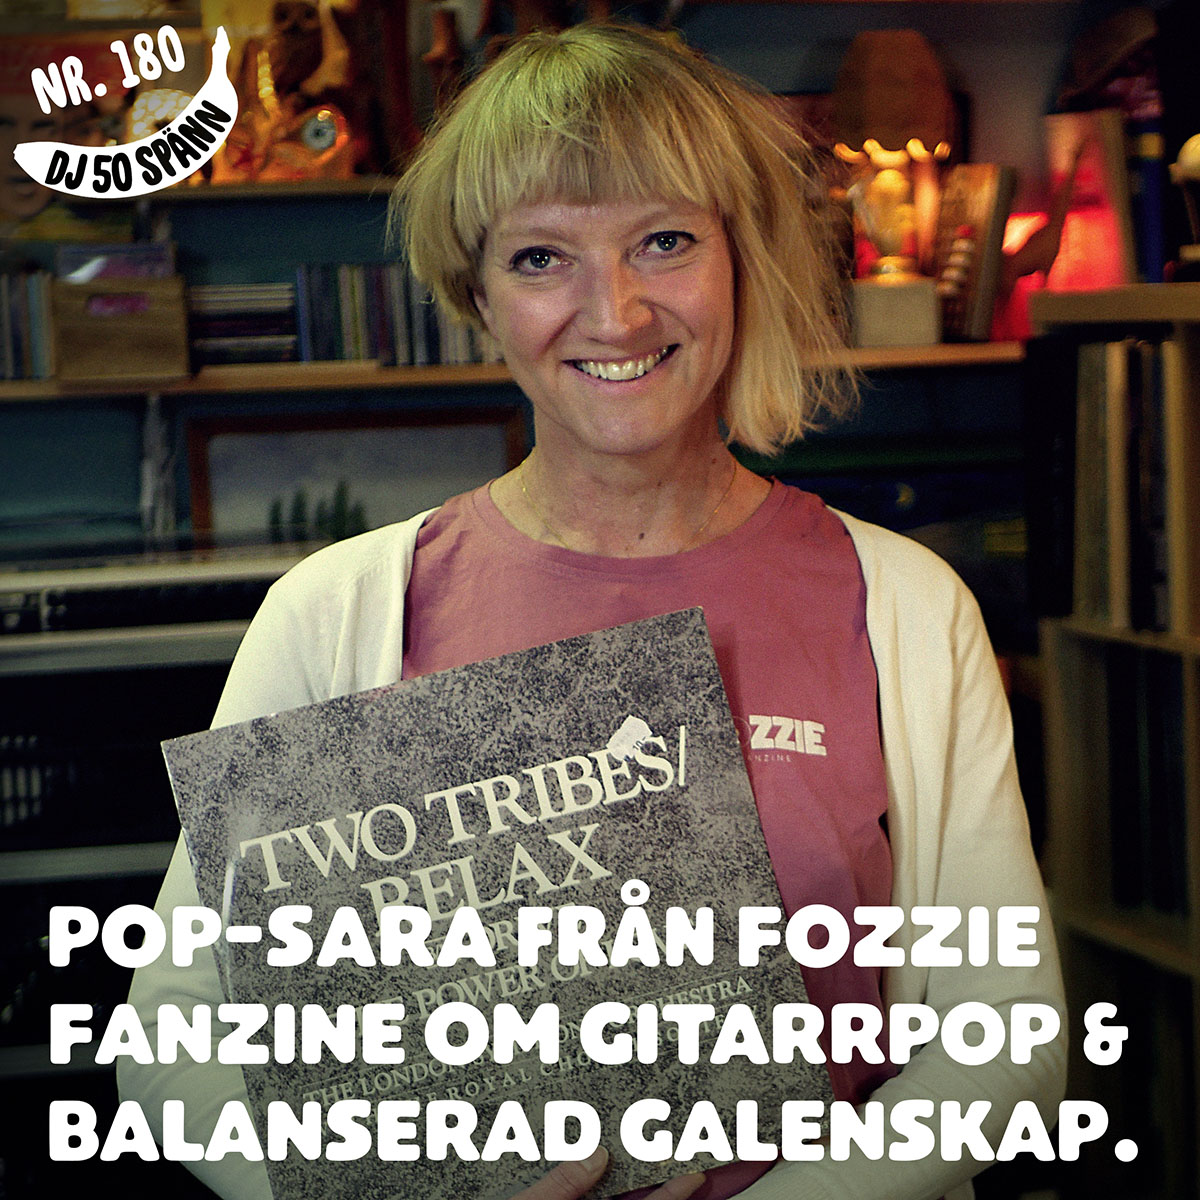 Pop-Sara från Fozzie Fanzine om gitarrpop och balanserad galenskap